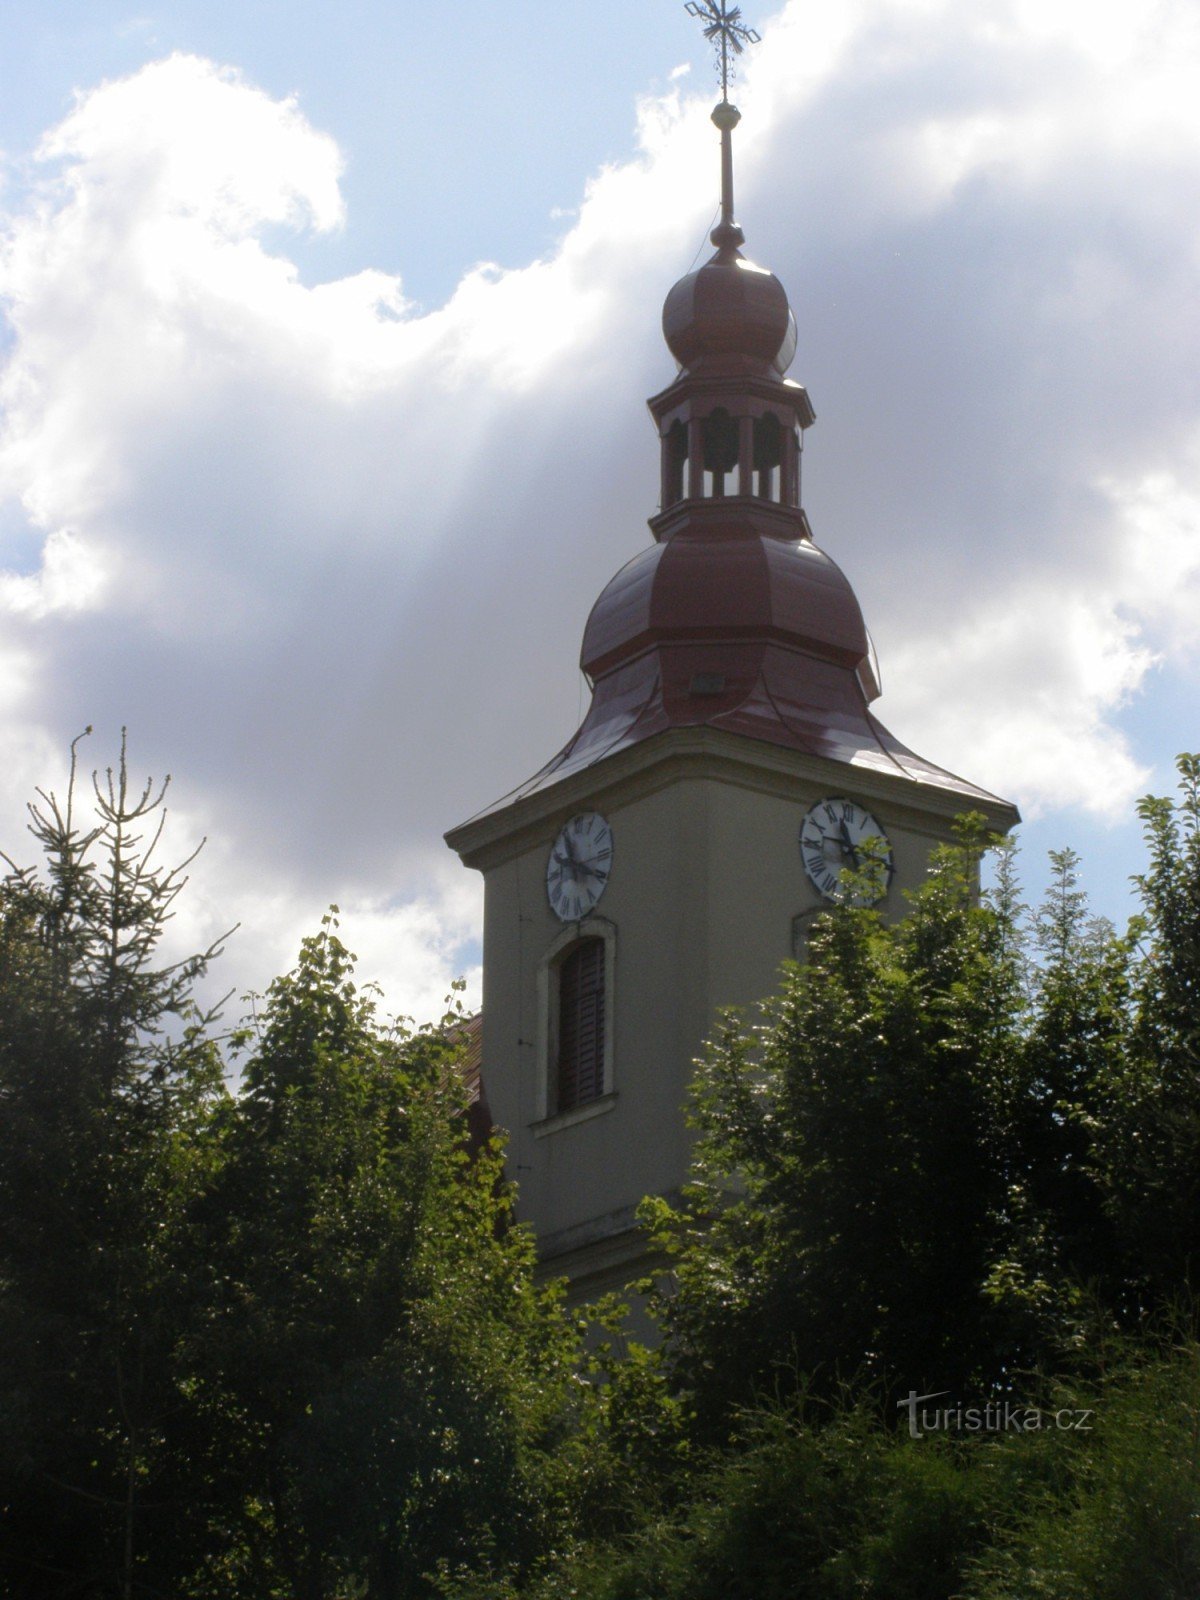 Стара Пака - церква св. Лоуренс